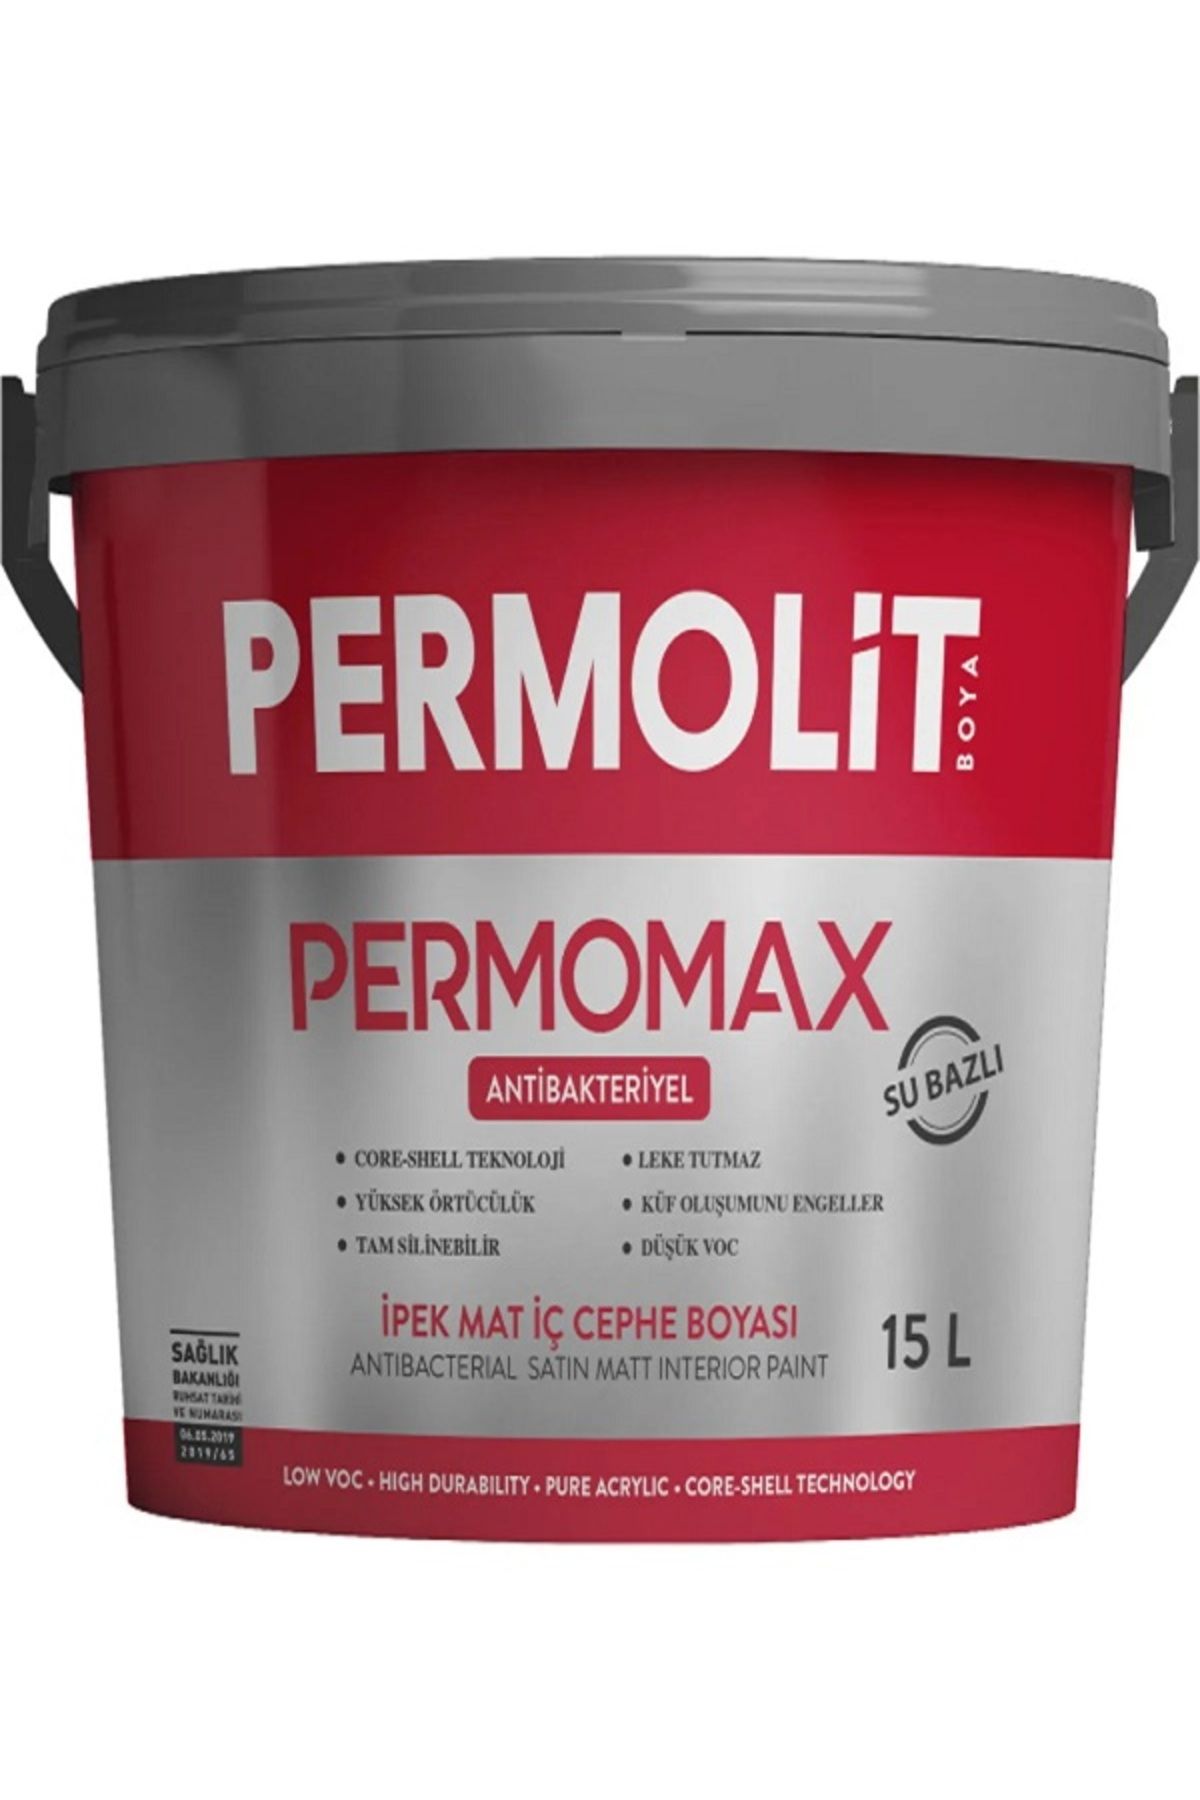 Permolit Permomax Antibakteriyel Küf ve Rutubet Önleyici Silikonlu Silinebilir Iç Cephe Duvar Boyası Beyaz